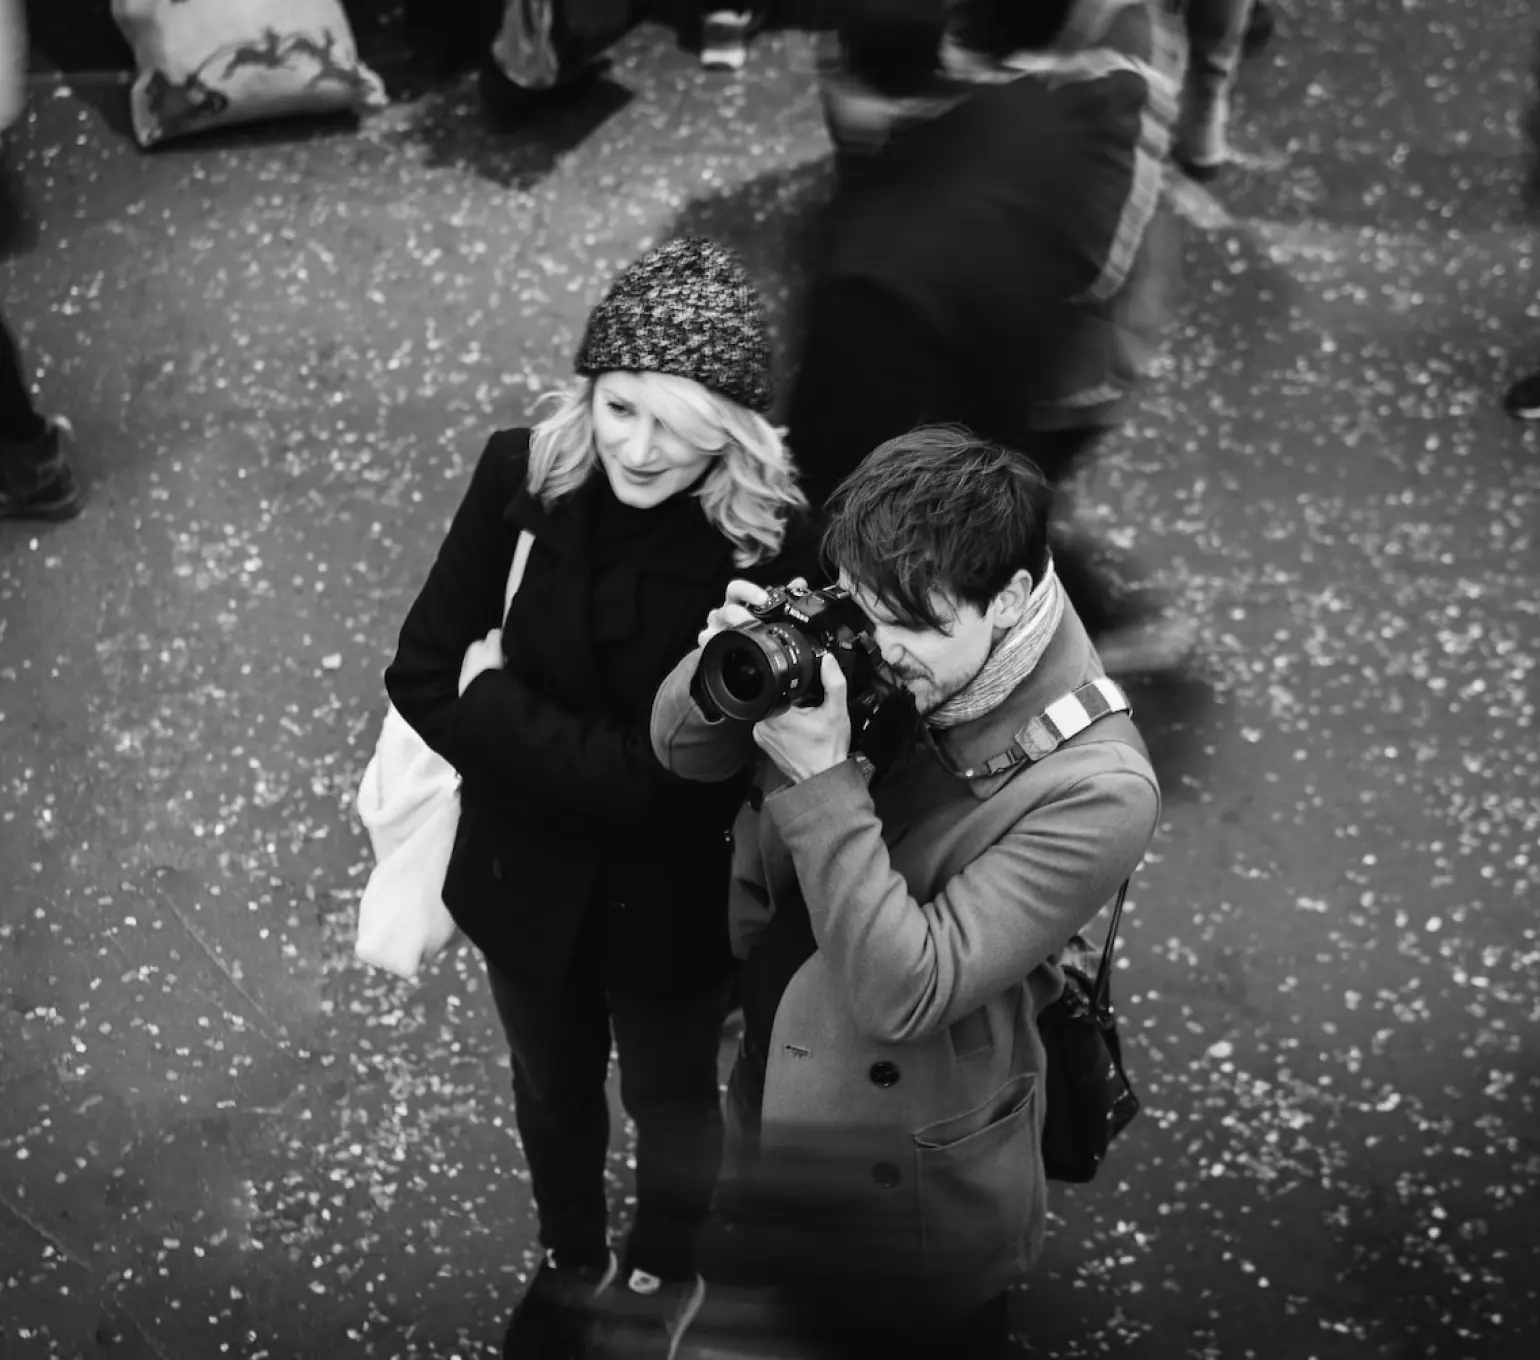 رجل يحمل كاميرا وبجانبه فتاة